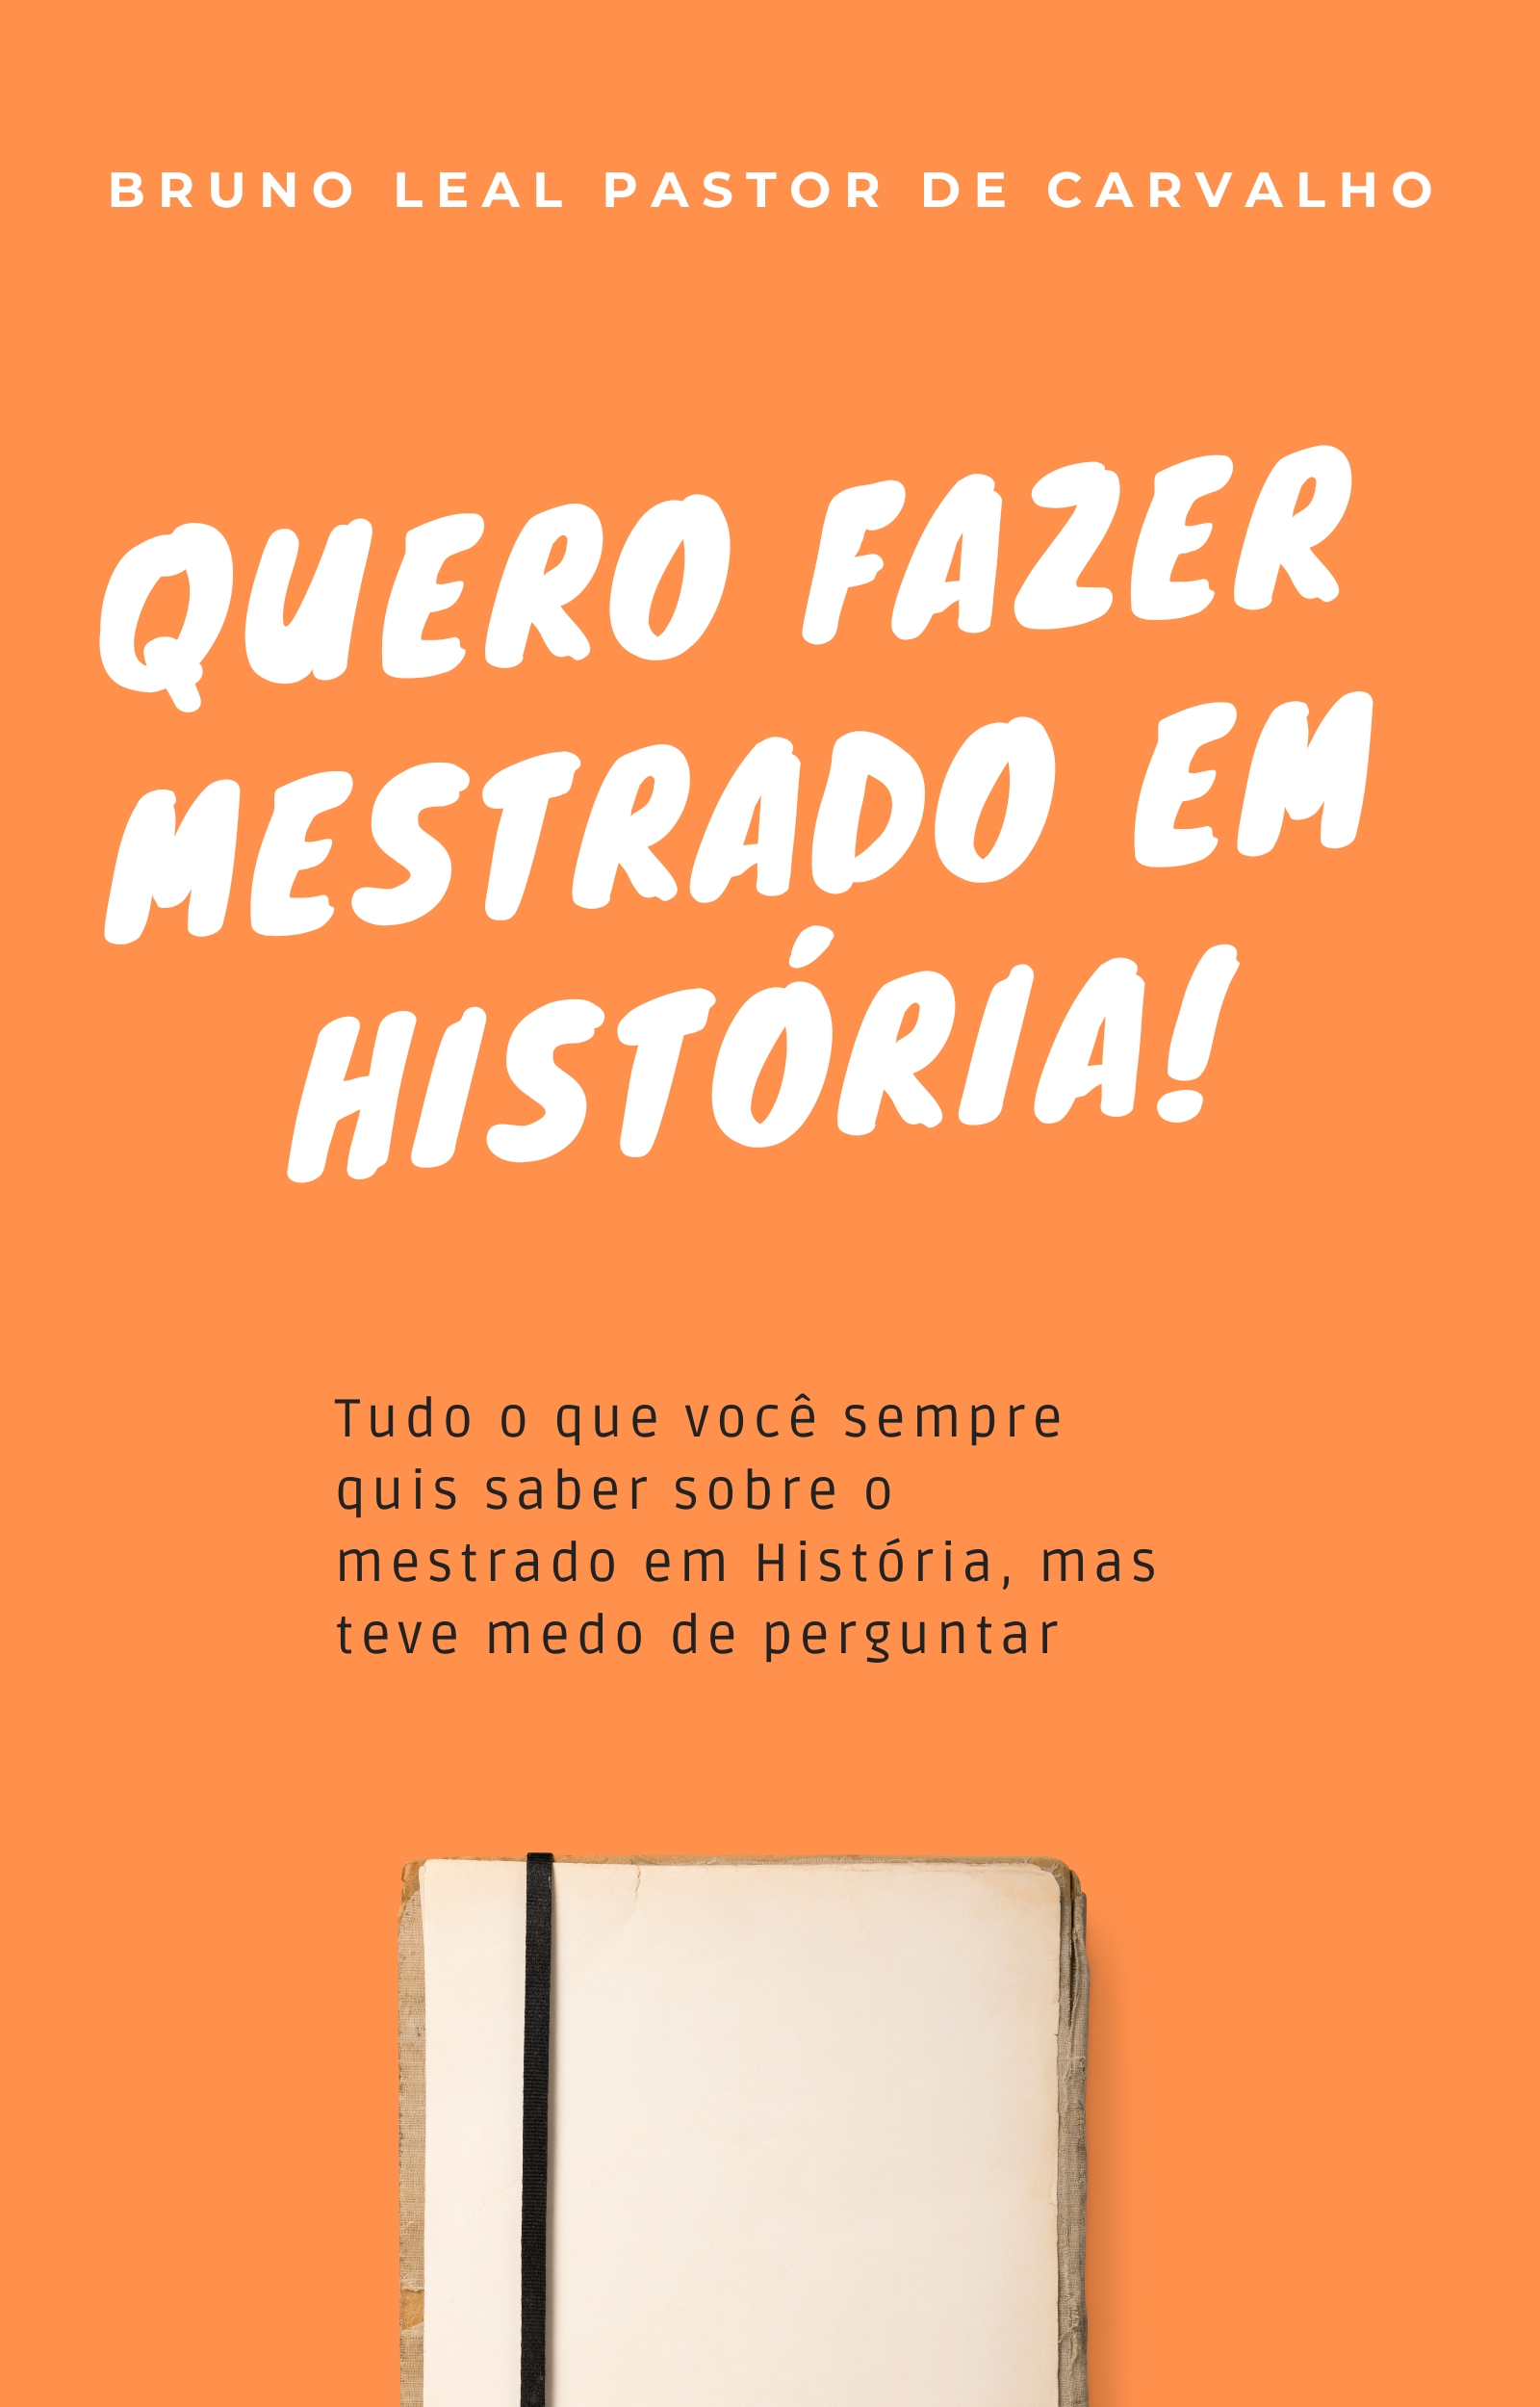 Tira Text: o serviço de tradução oficial do Café História - Café História